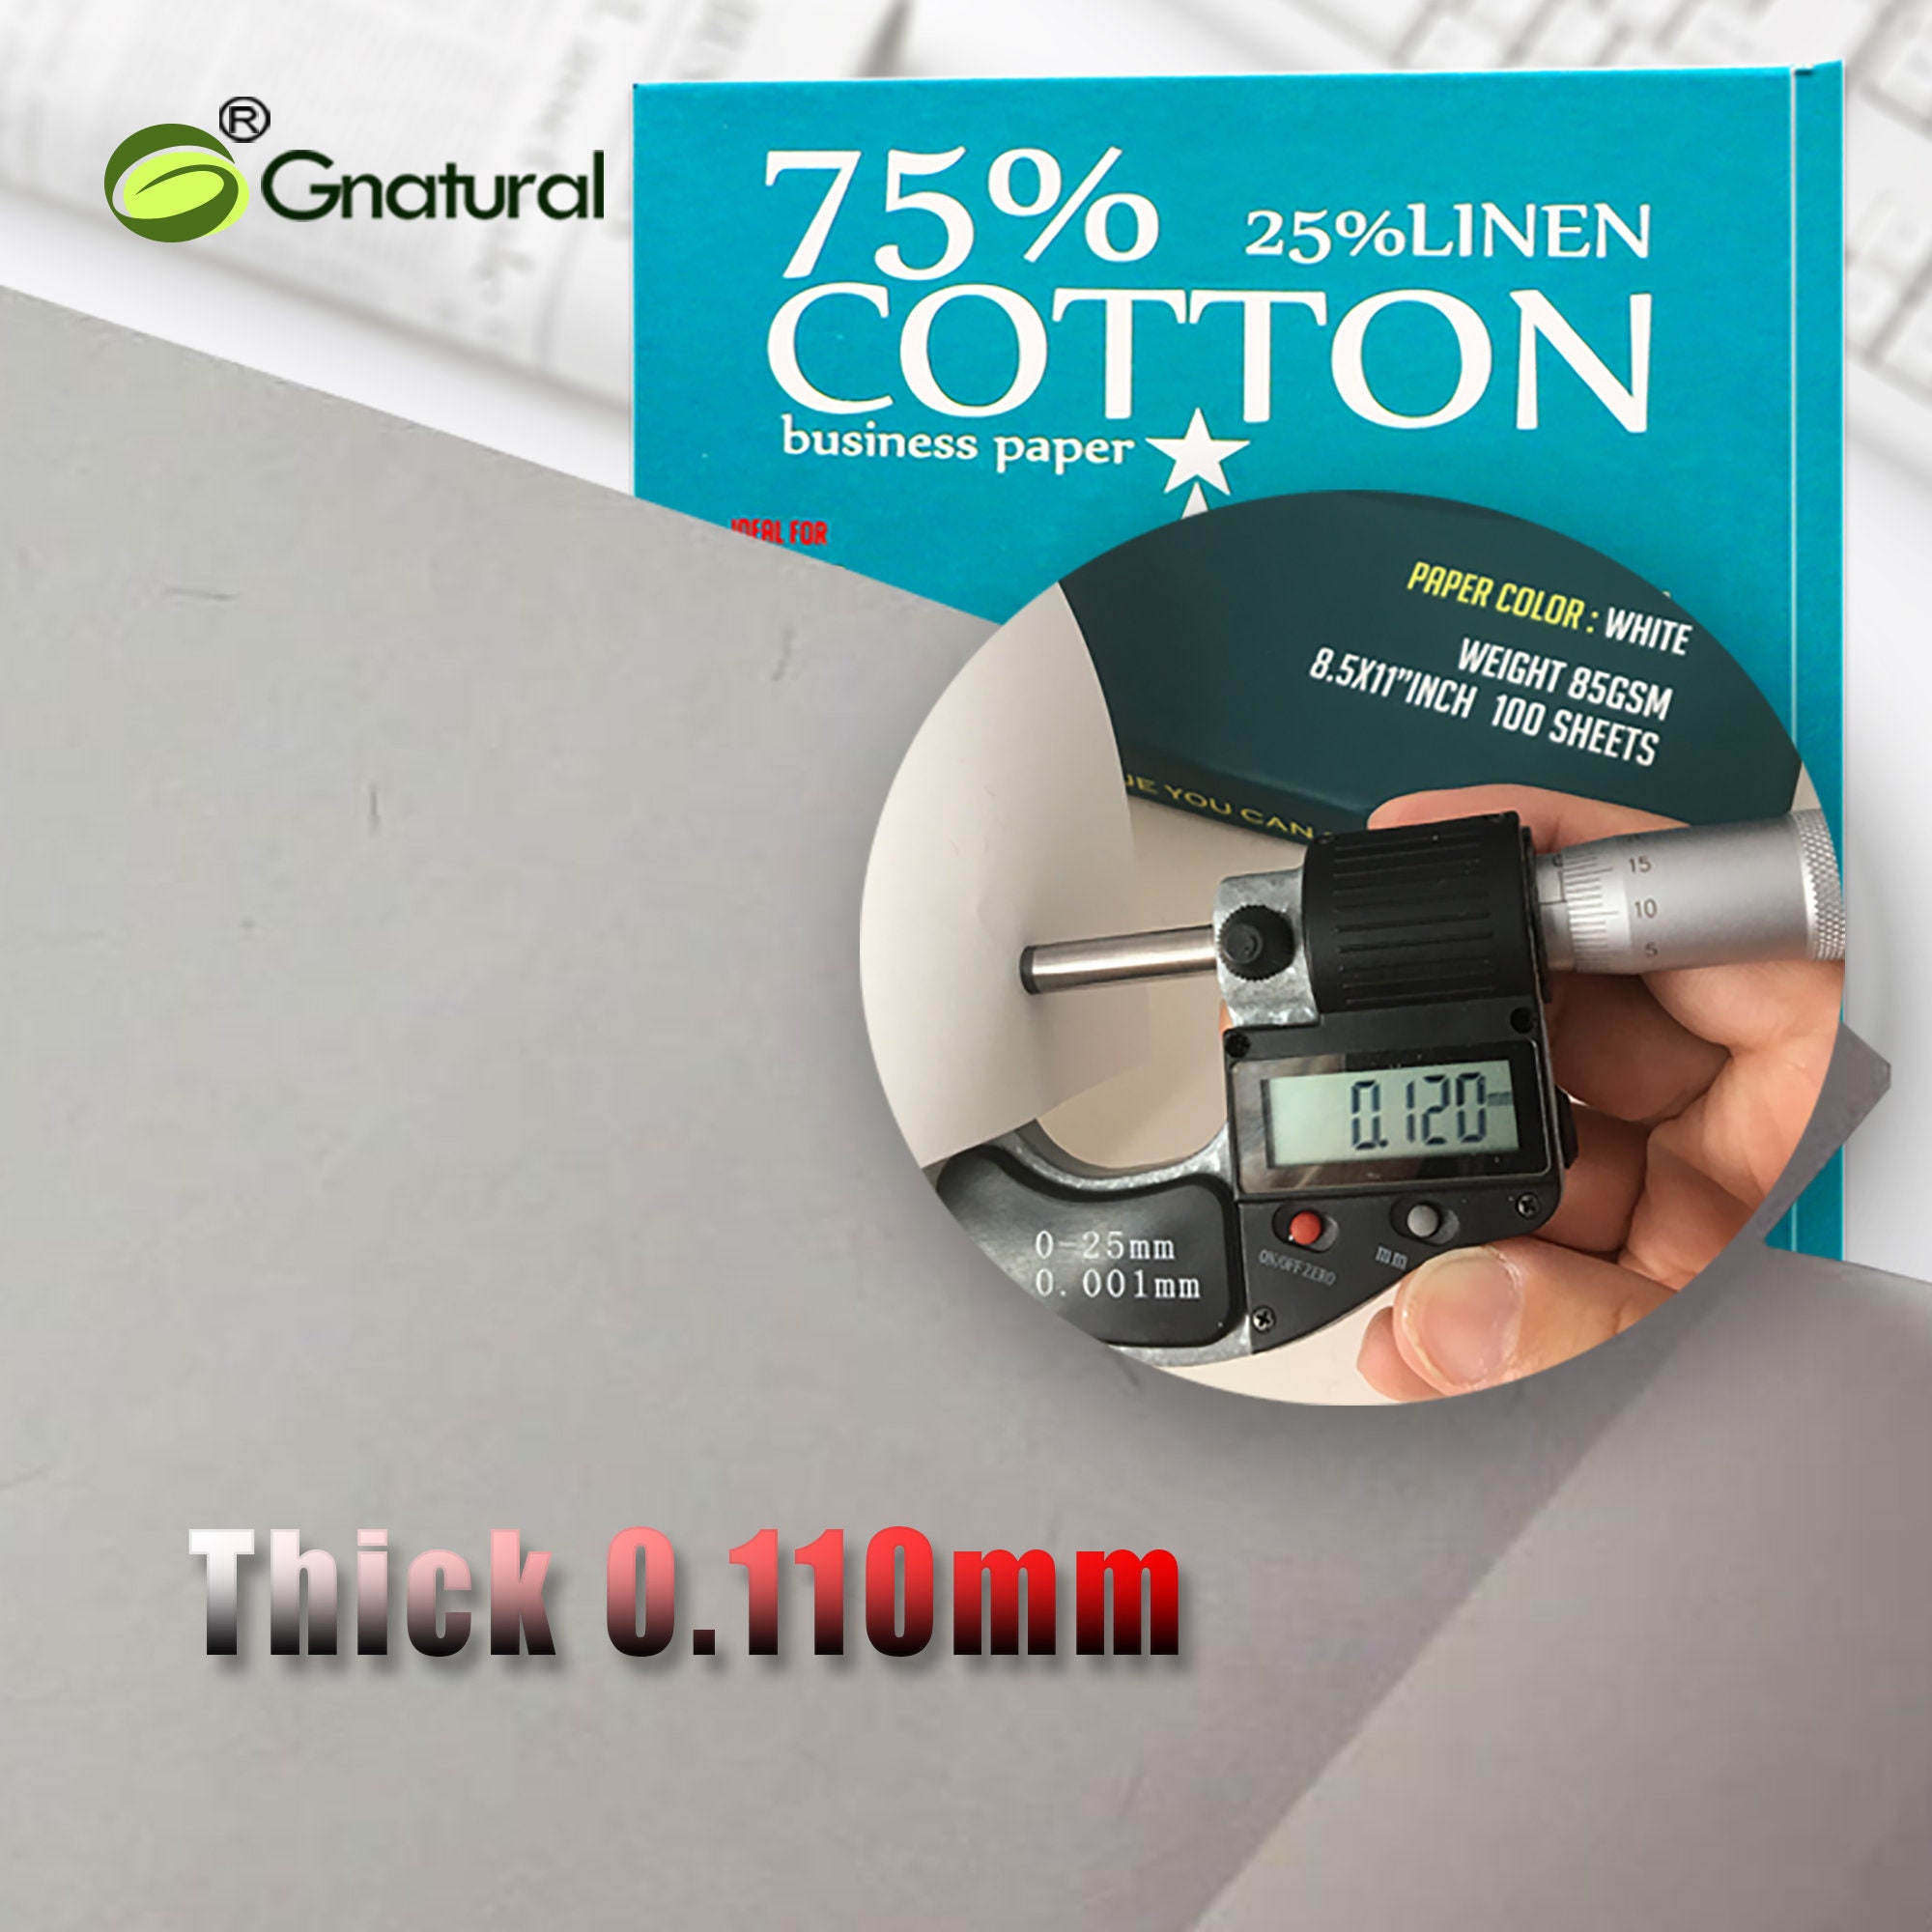 50gsm 75/25 cotton & linen paper ( white ) - No.MCYT025